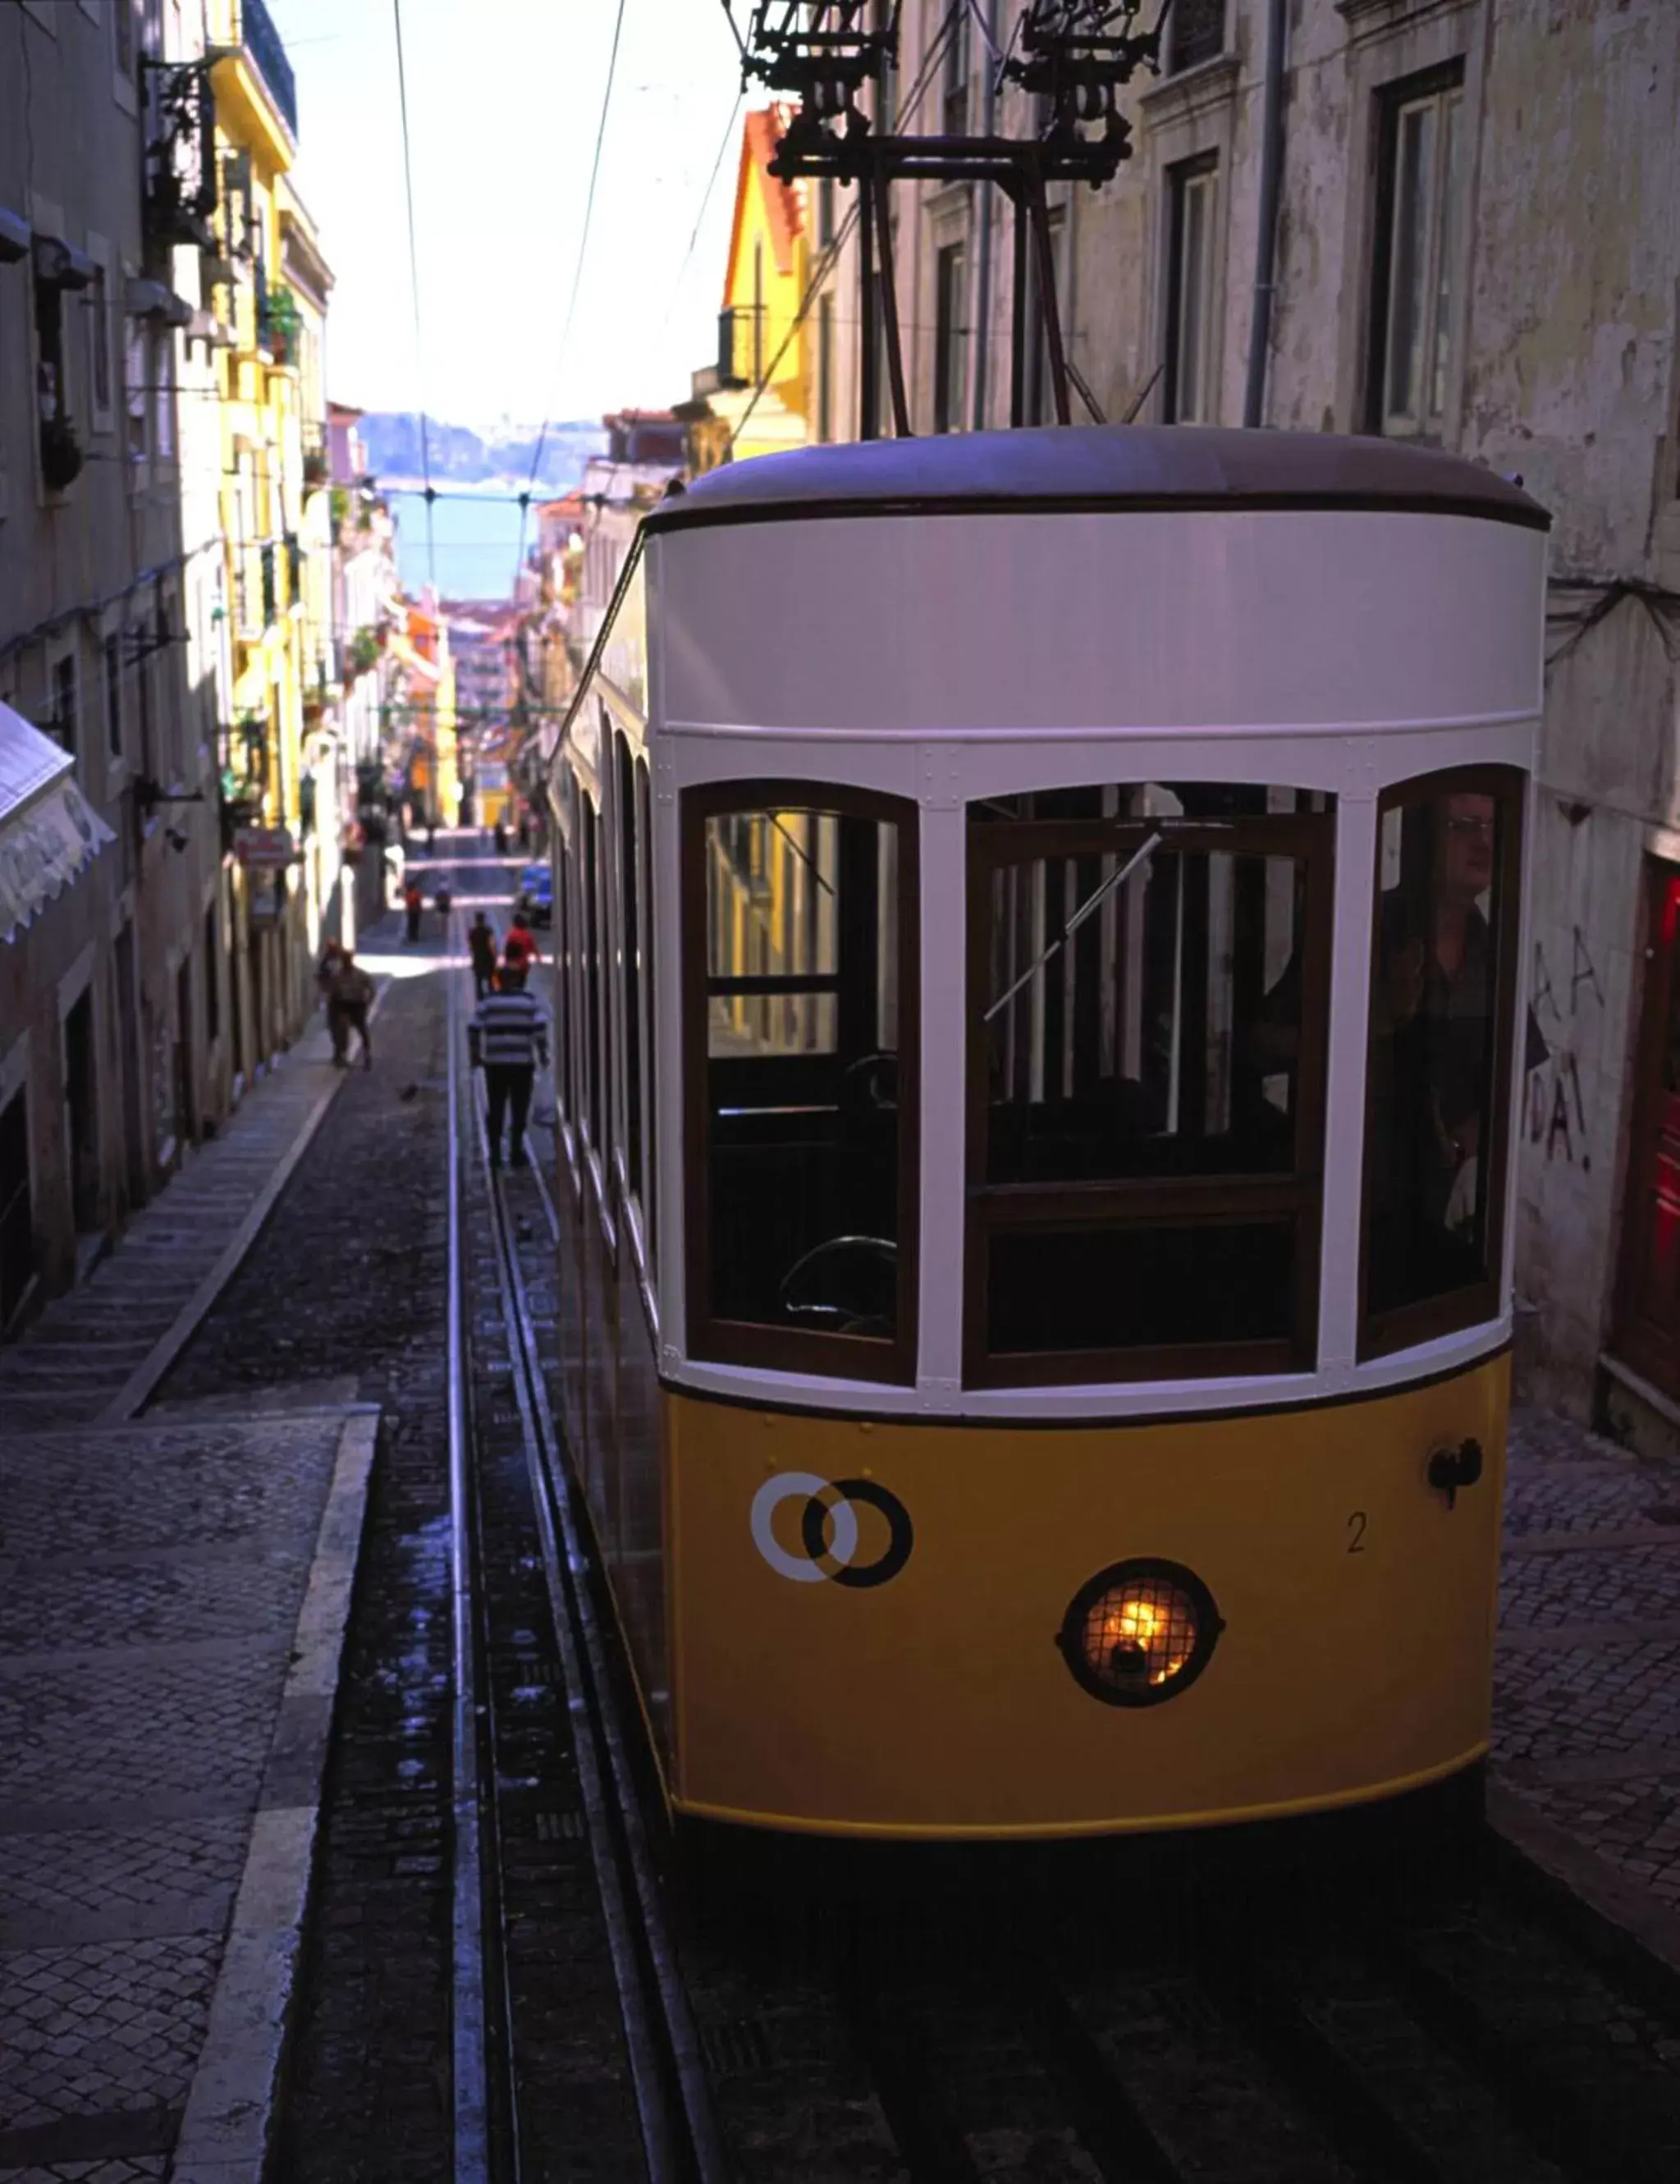 Area and facilities in Hotel Principe Lisboa